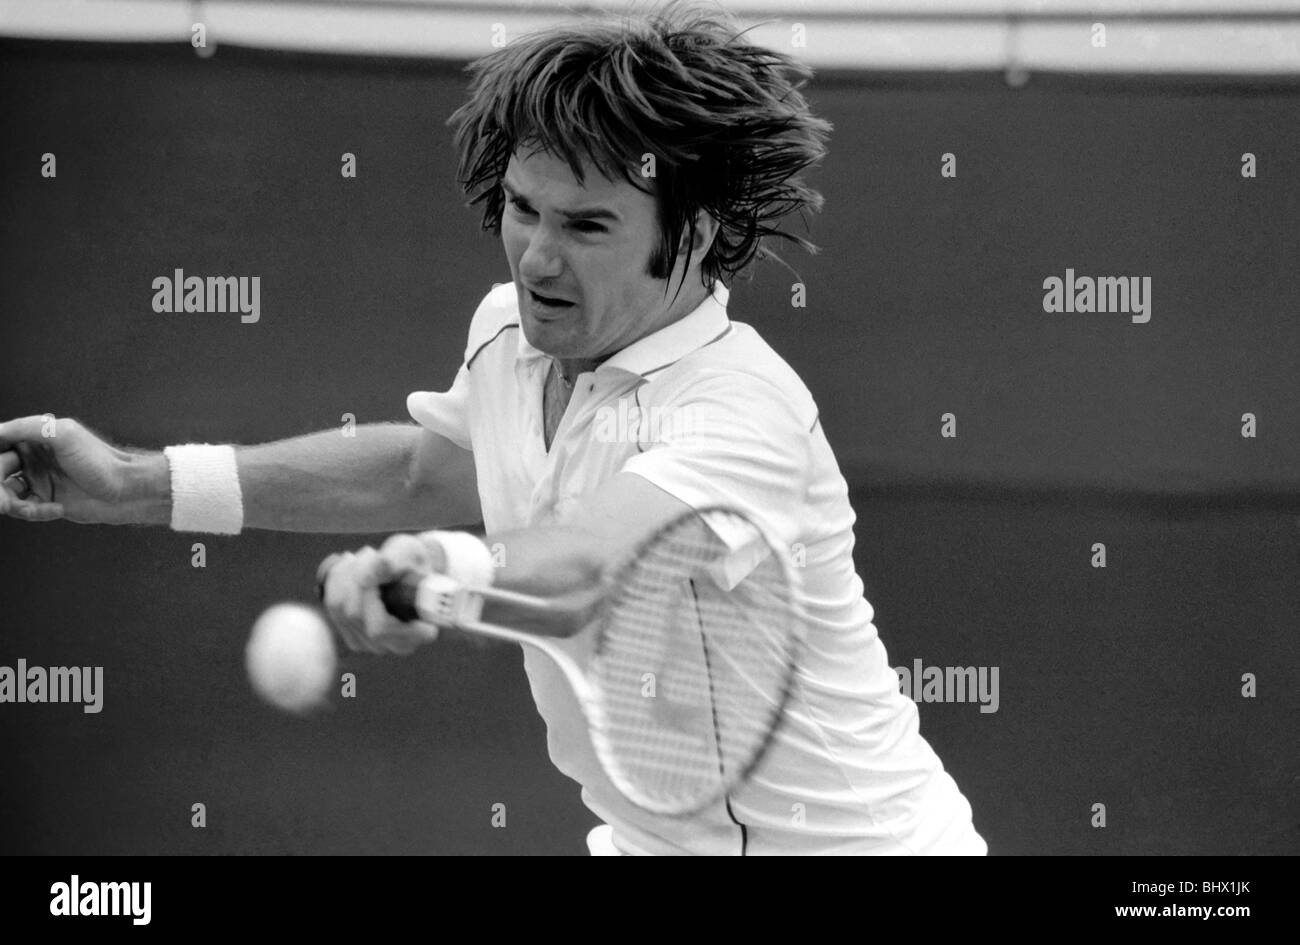 Wimbledon 3° giorno: Jimmy Connors in azione. Giugno 1981 81-3579-008 Foto Stock